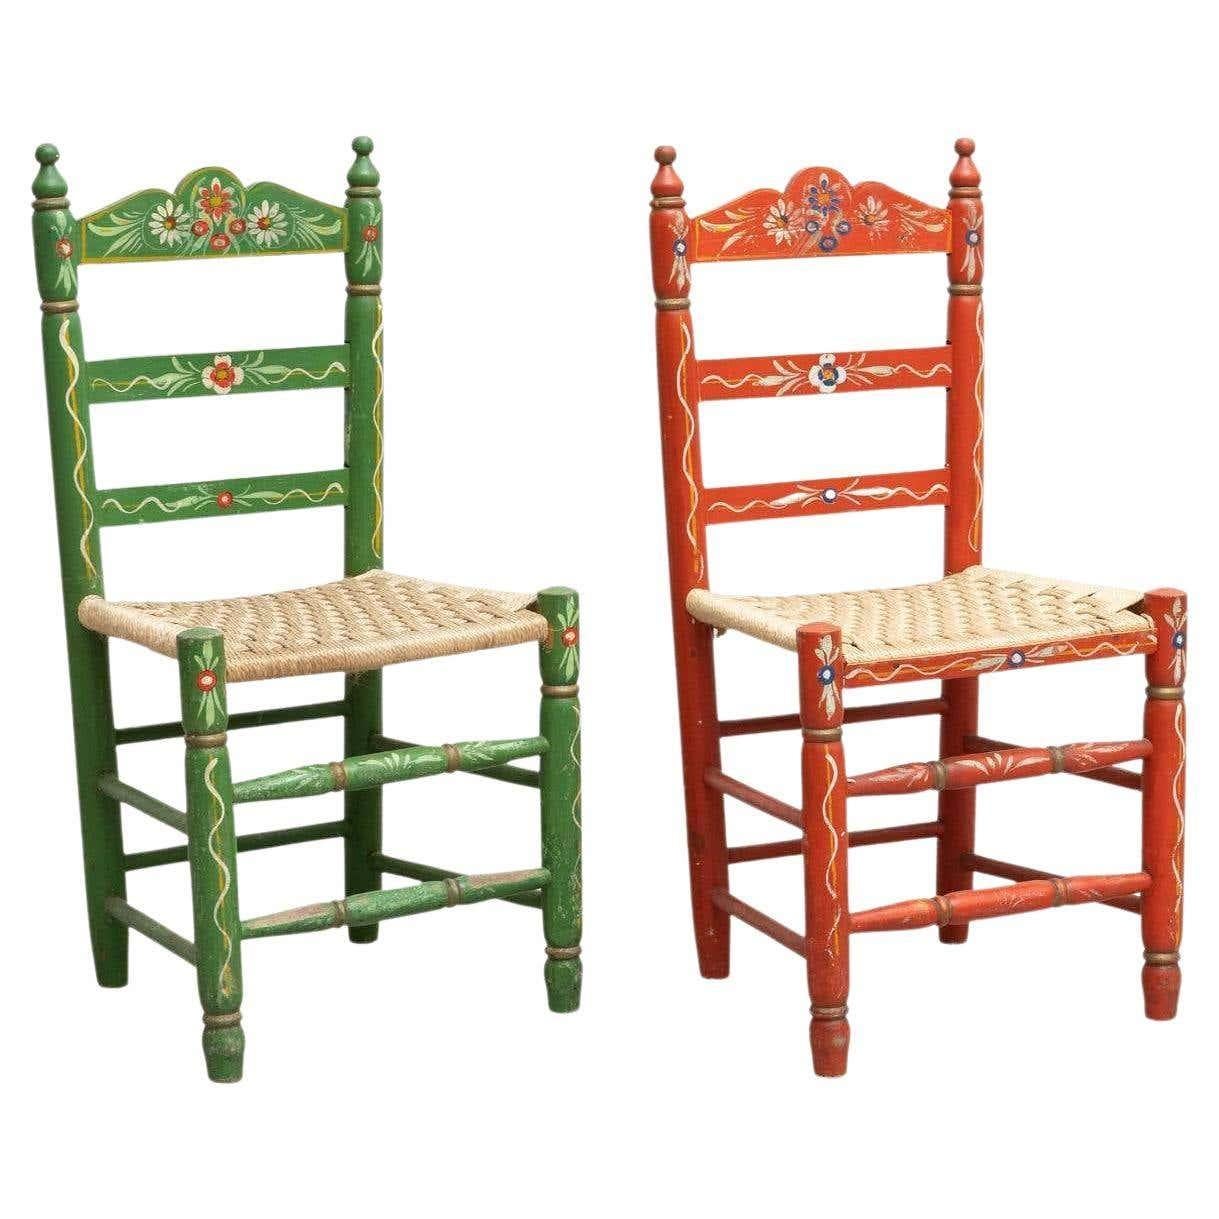 Ensemble de deux chaises en bois rustiques peintes à la main.

Par un artisan inconnu en Espagne, vers 1940.

En bon état d'origine, avec une usure mineure conforme à l'âge et à l'usage, préservant une belle patine.

Matériaux :
Le bois.

